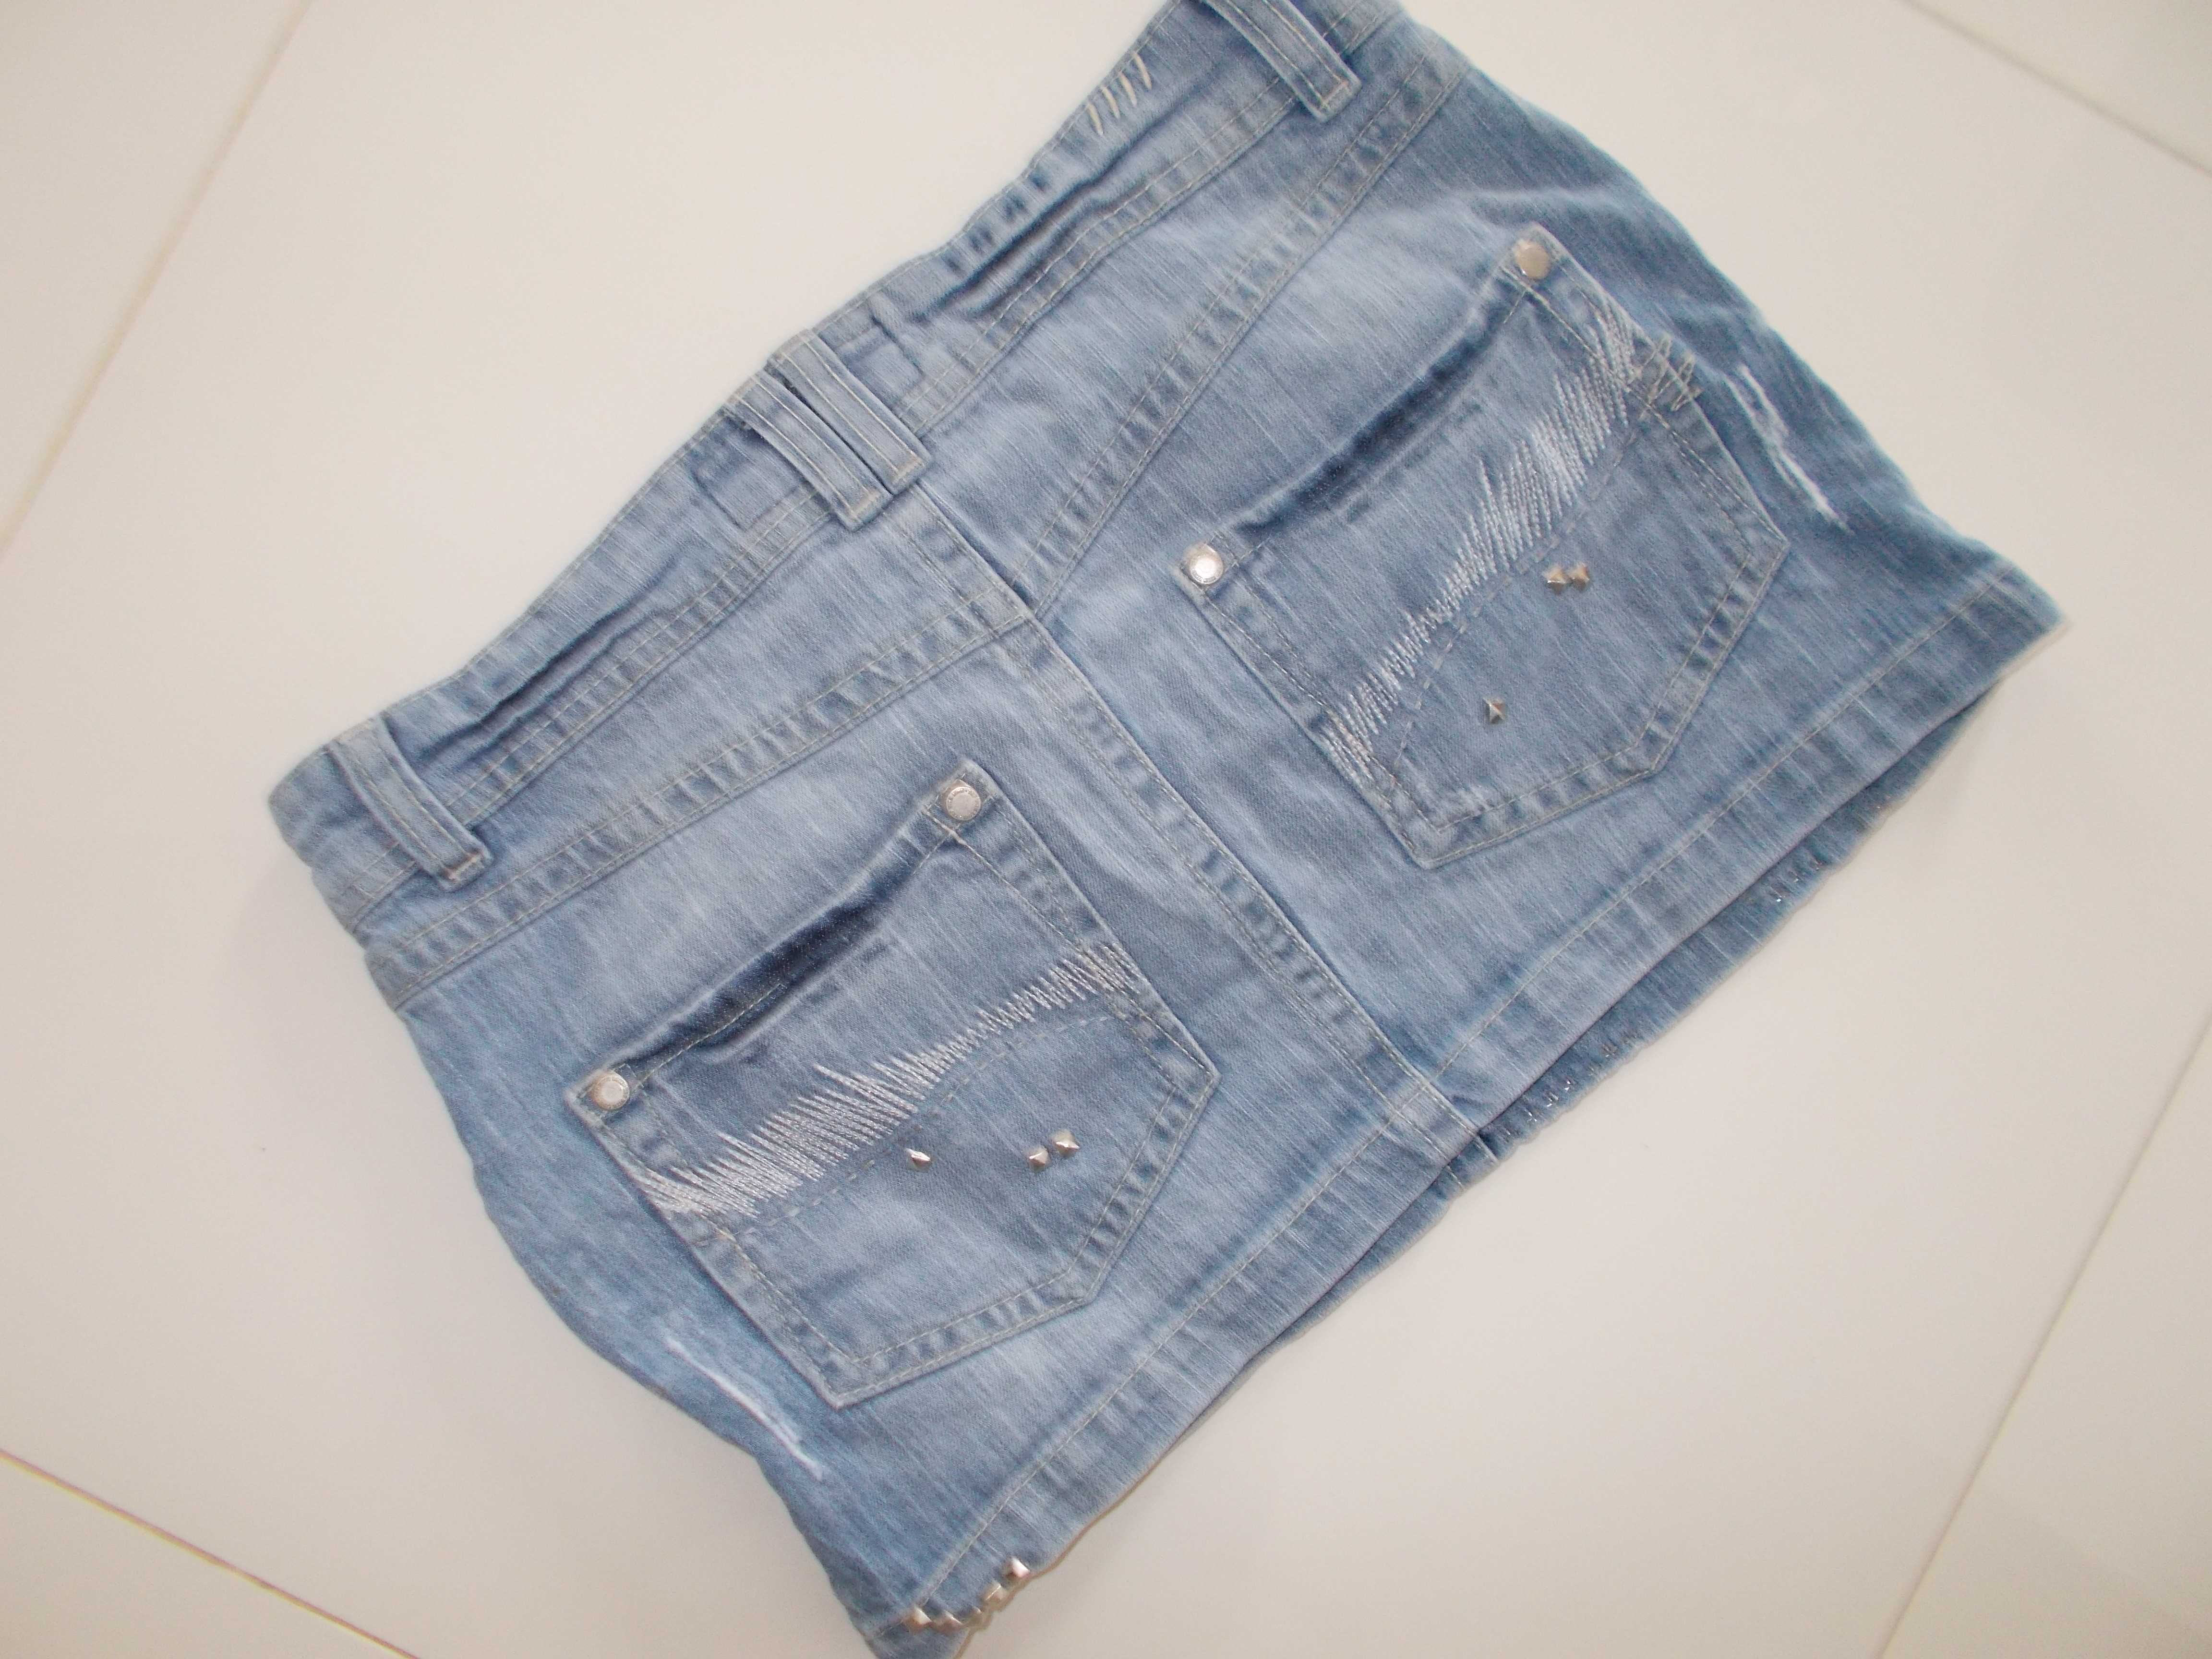 ZARA jeansowa mini spódnica XS 34 krótka spódniczka damska 32